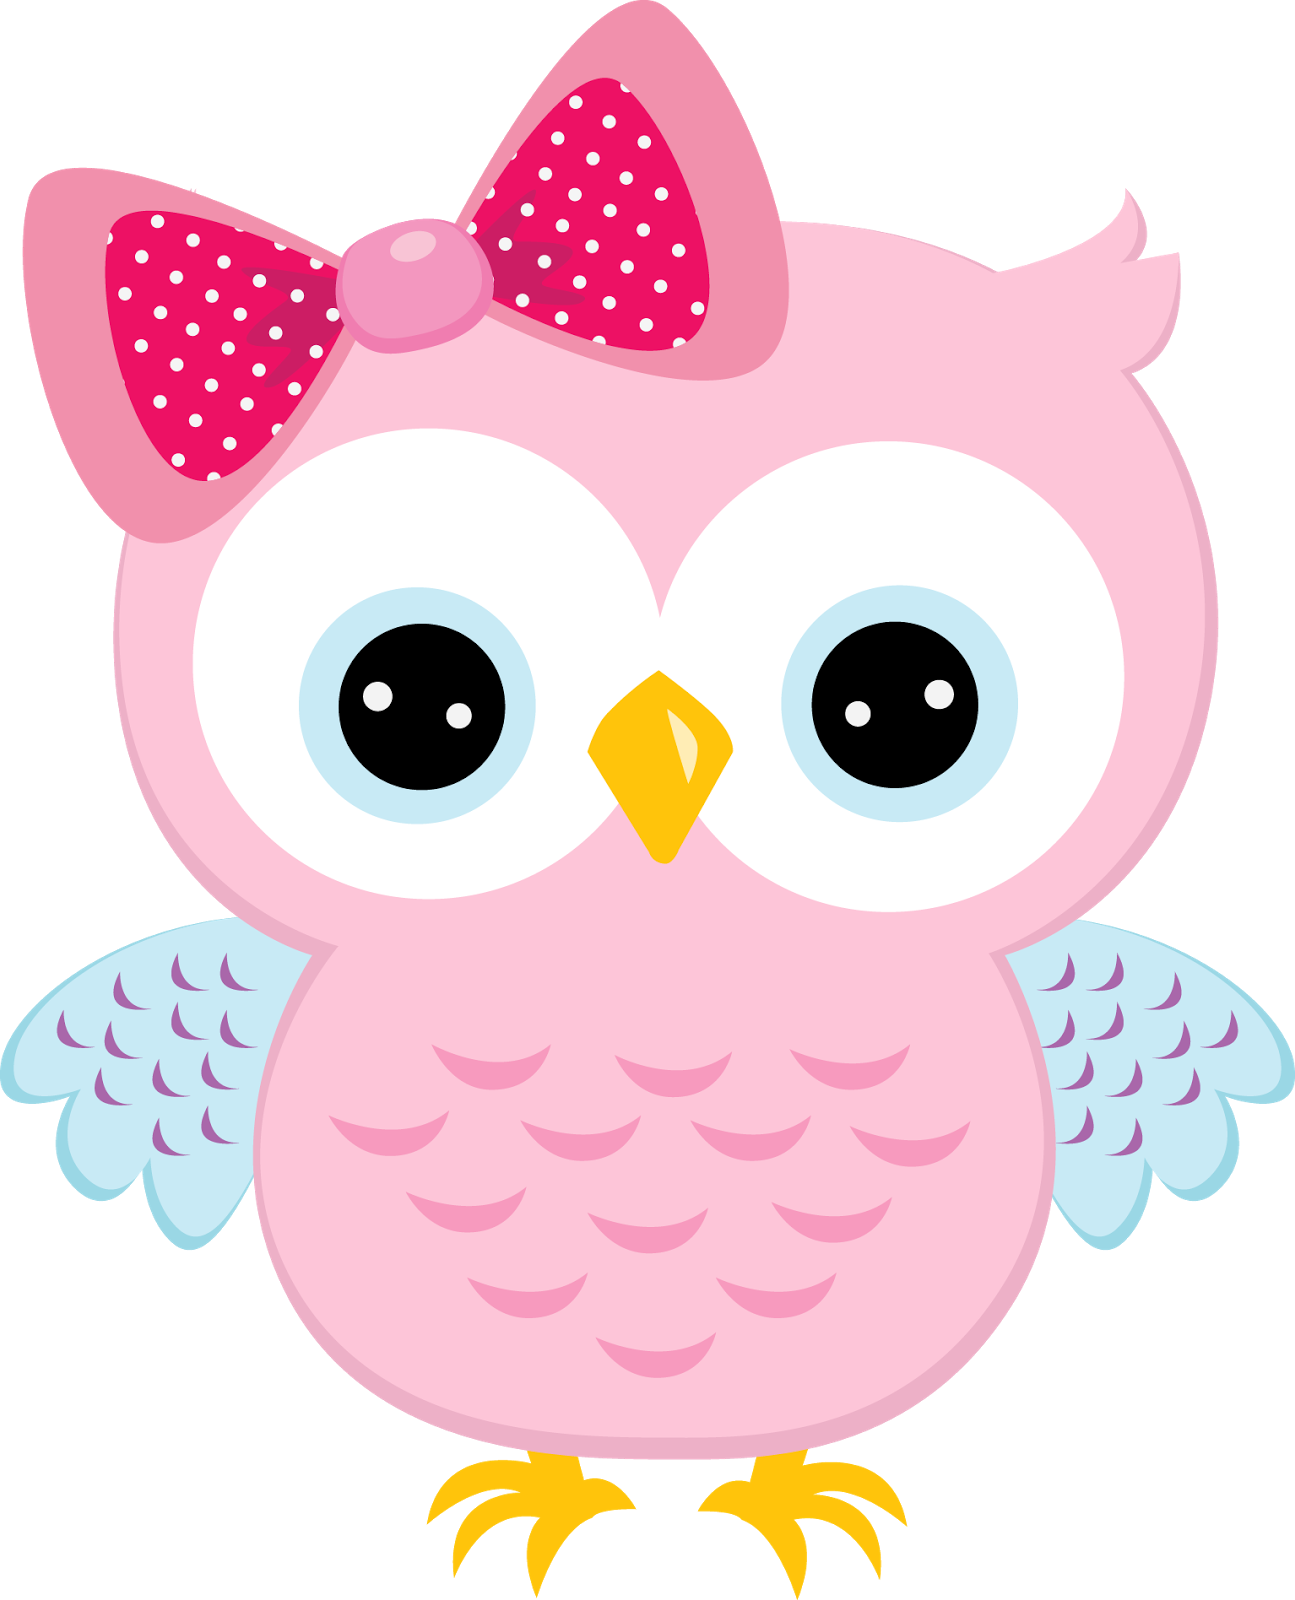 Clipart owl banner. Ibd hgtavme png piksel